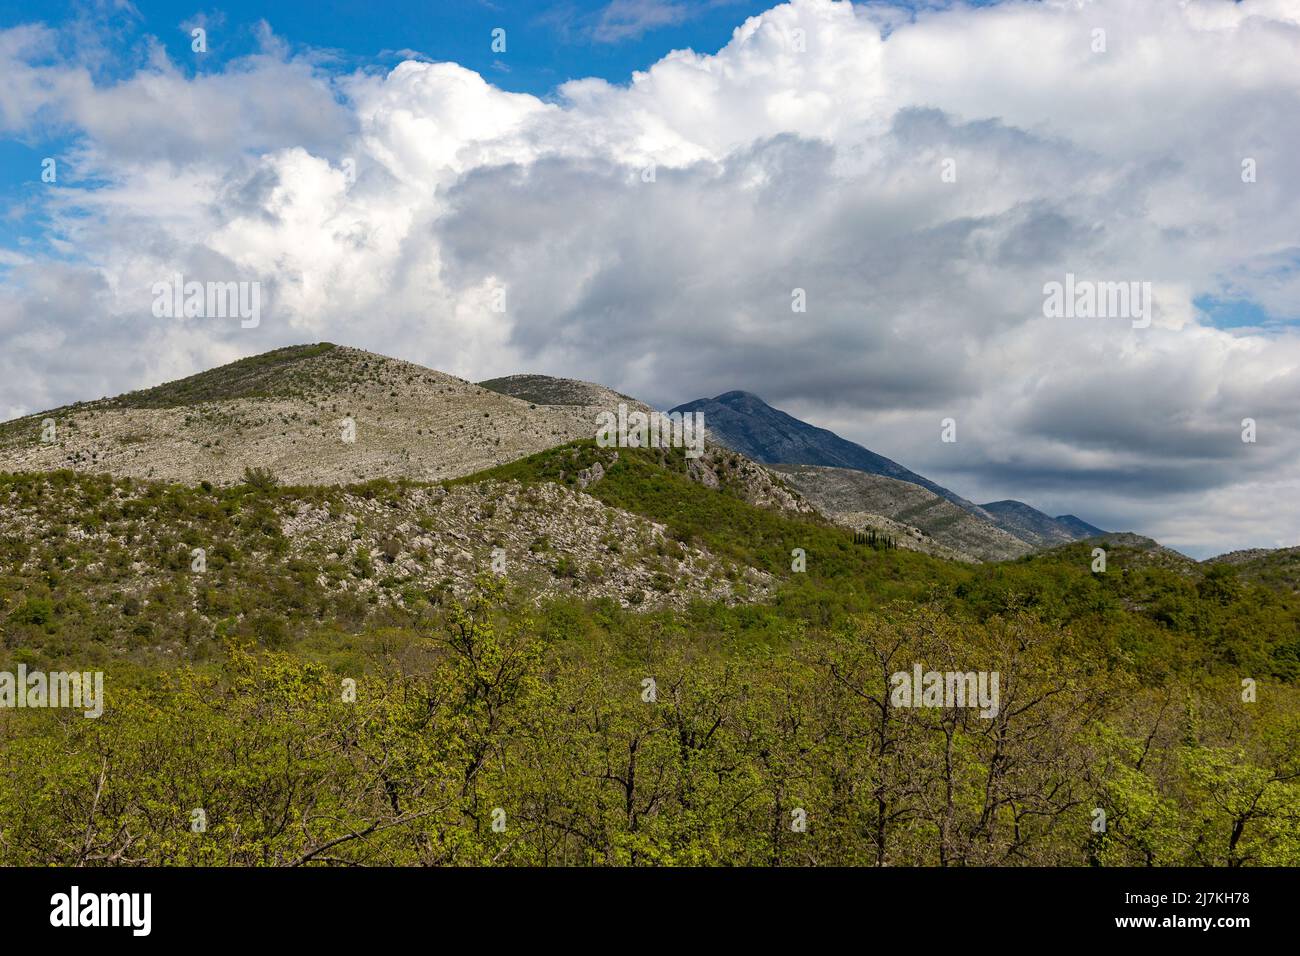 Balcan montagnes dans la région de Konavle près de Dubrovnik. Banque D'Images